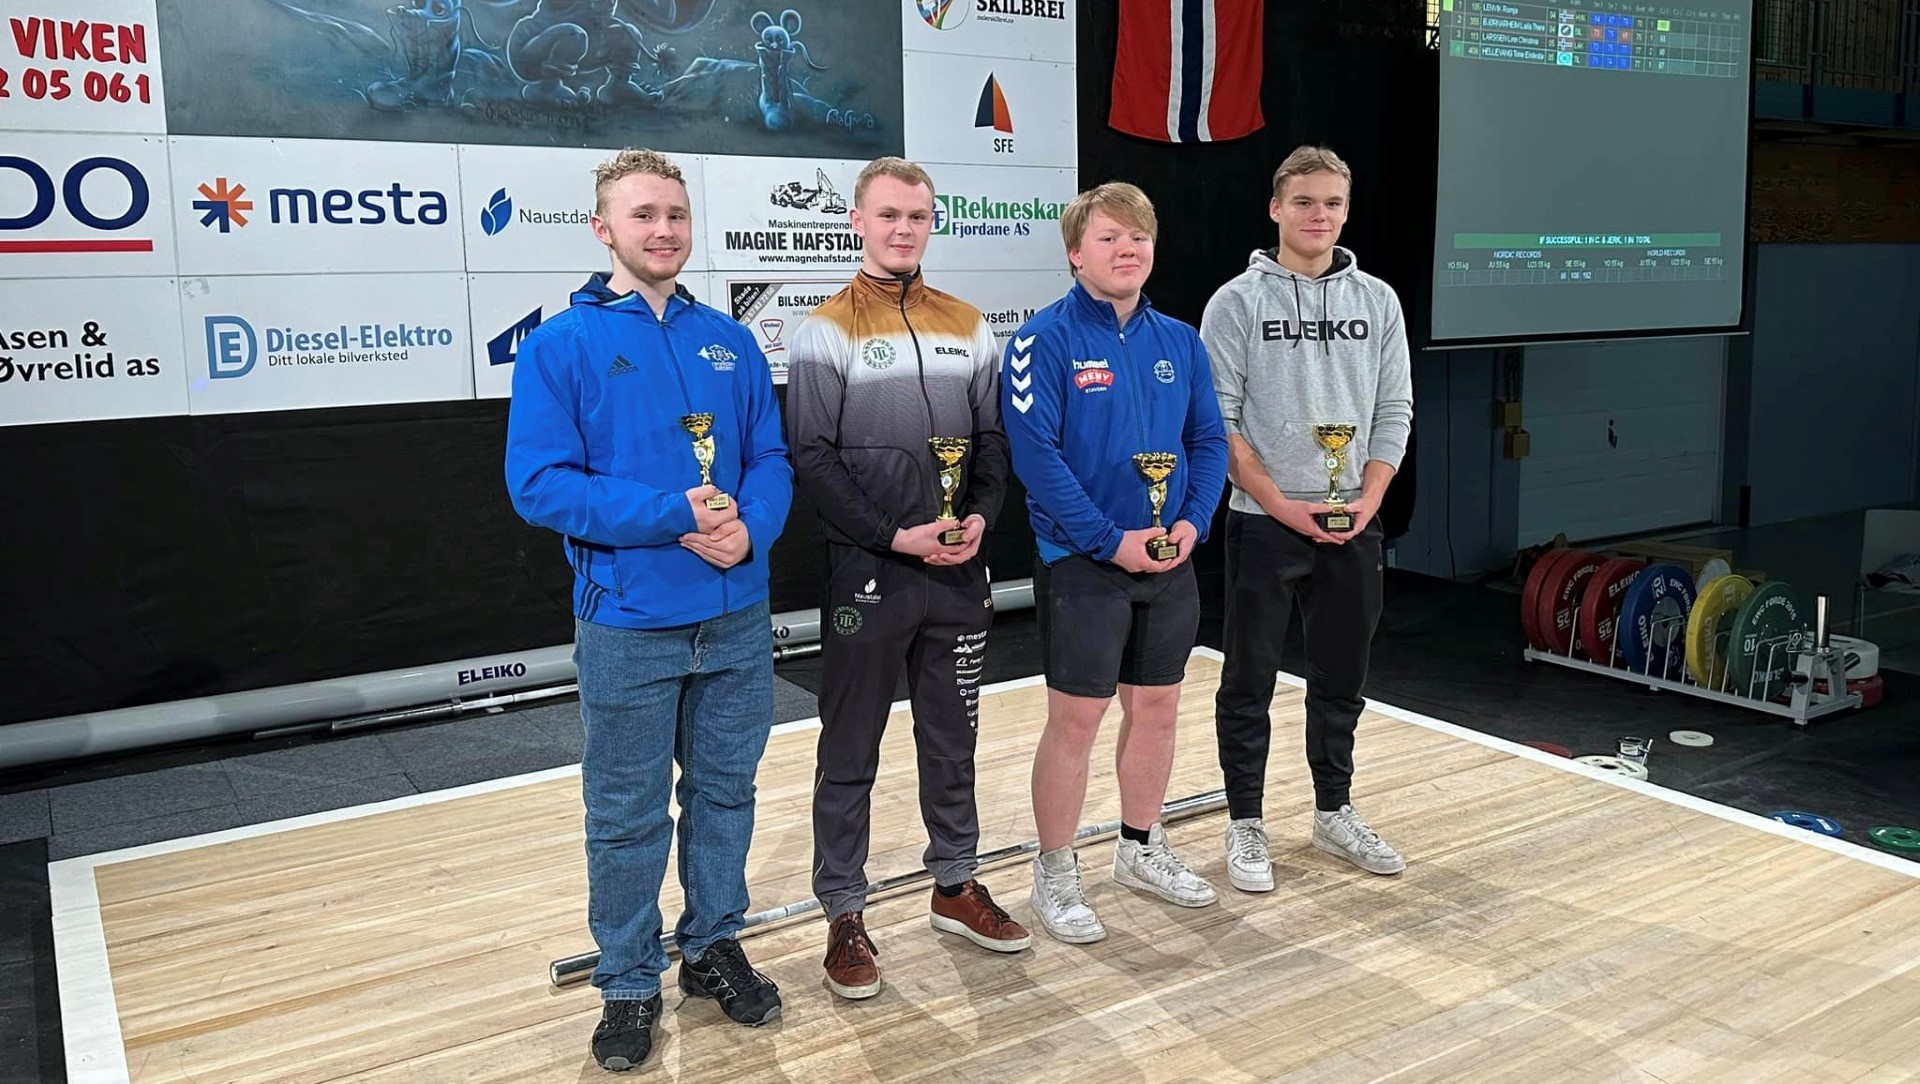 Alvolai ble suverent beste løfter på NM ungdom med hele 320,61 poeng. 
F.v.: Nikolai Aadland  (AK Bjørgvin), Aksel Svorstøl (Tambarskjelvar IL), William Christiansen (Larvik AK) og Alvolai Røyseth (Tambarskjelvar IL). 